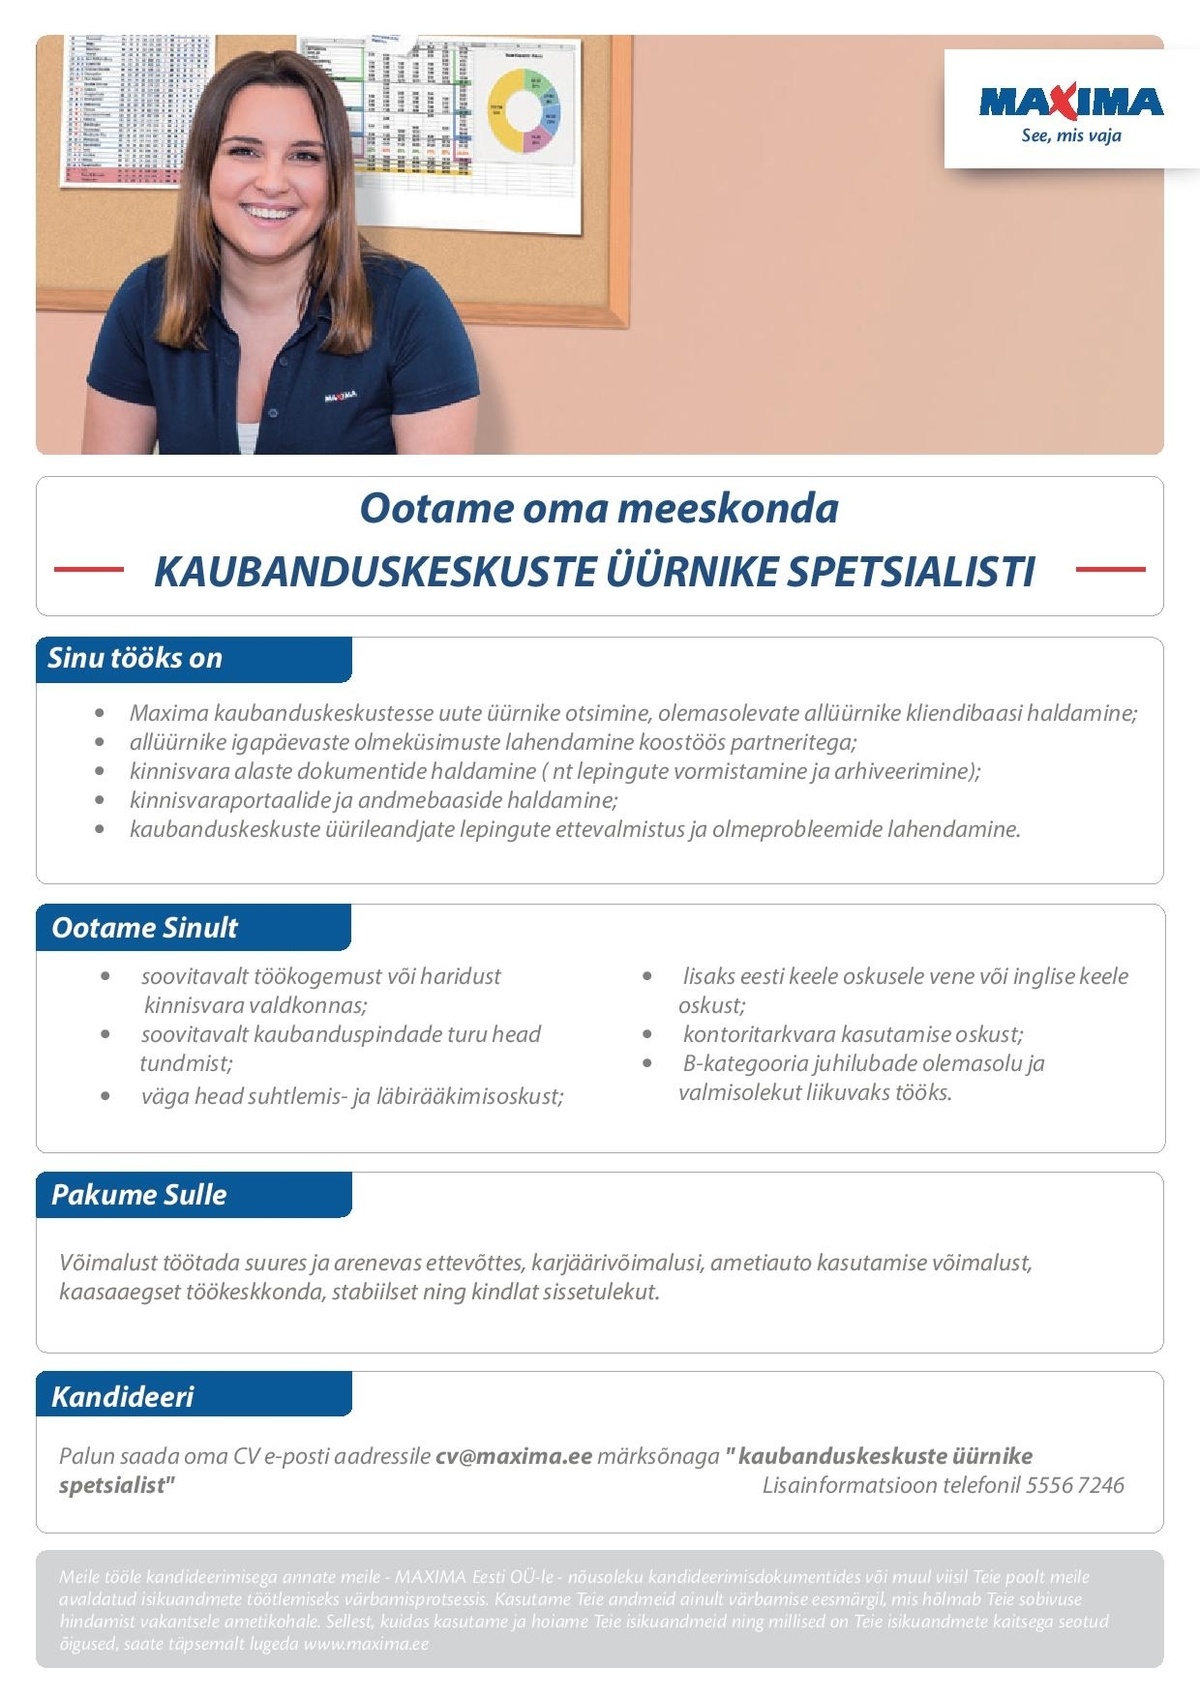 Maxima Eesti OÜ Kaubanduskeskuste üürnike spetsialist 